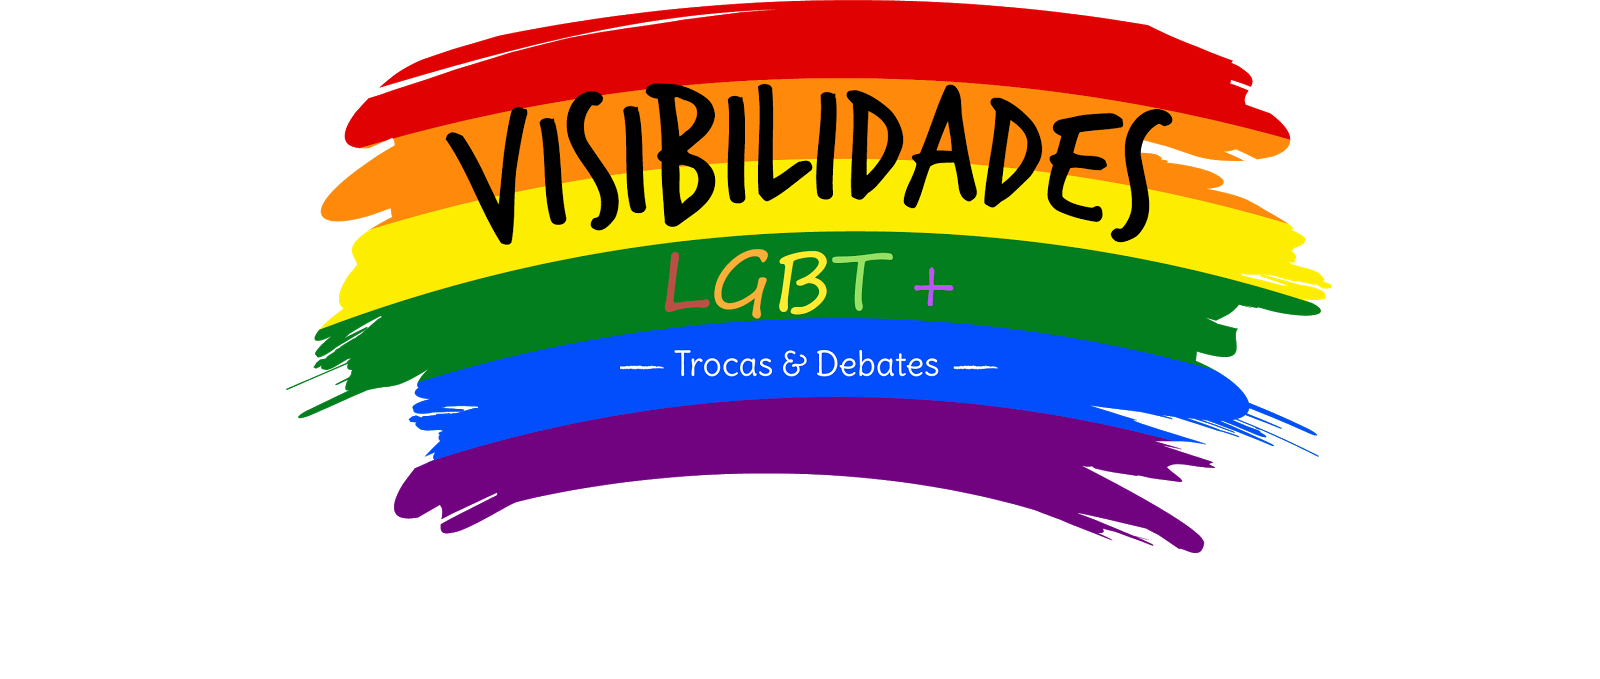 VISIBILIDADES LGBT+